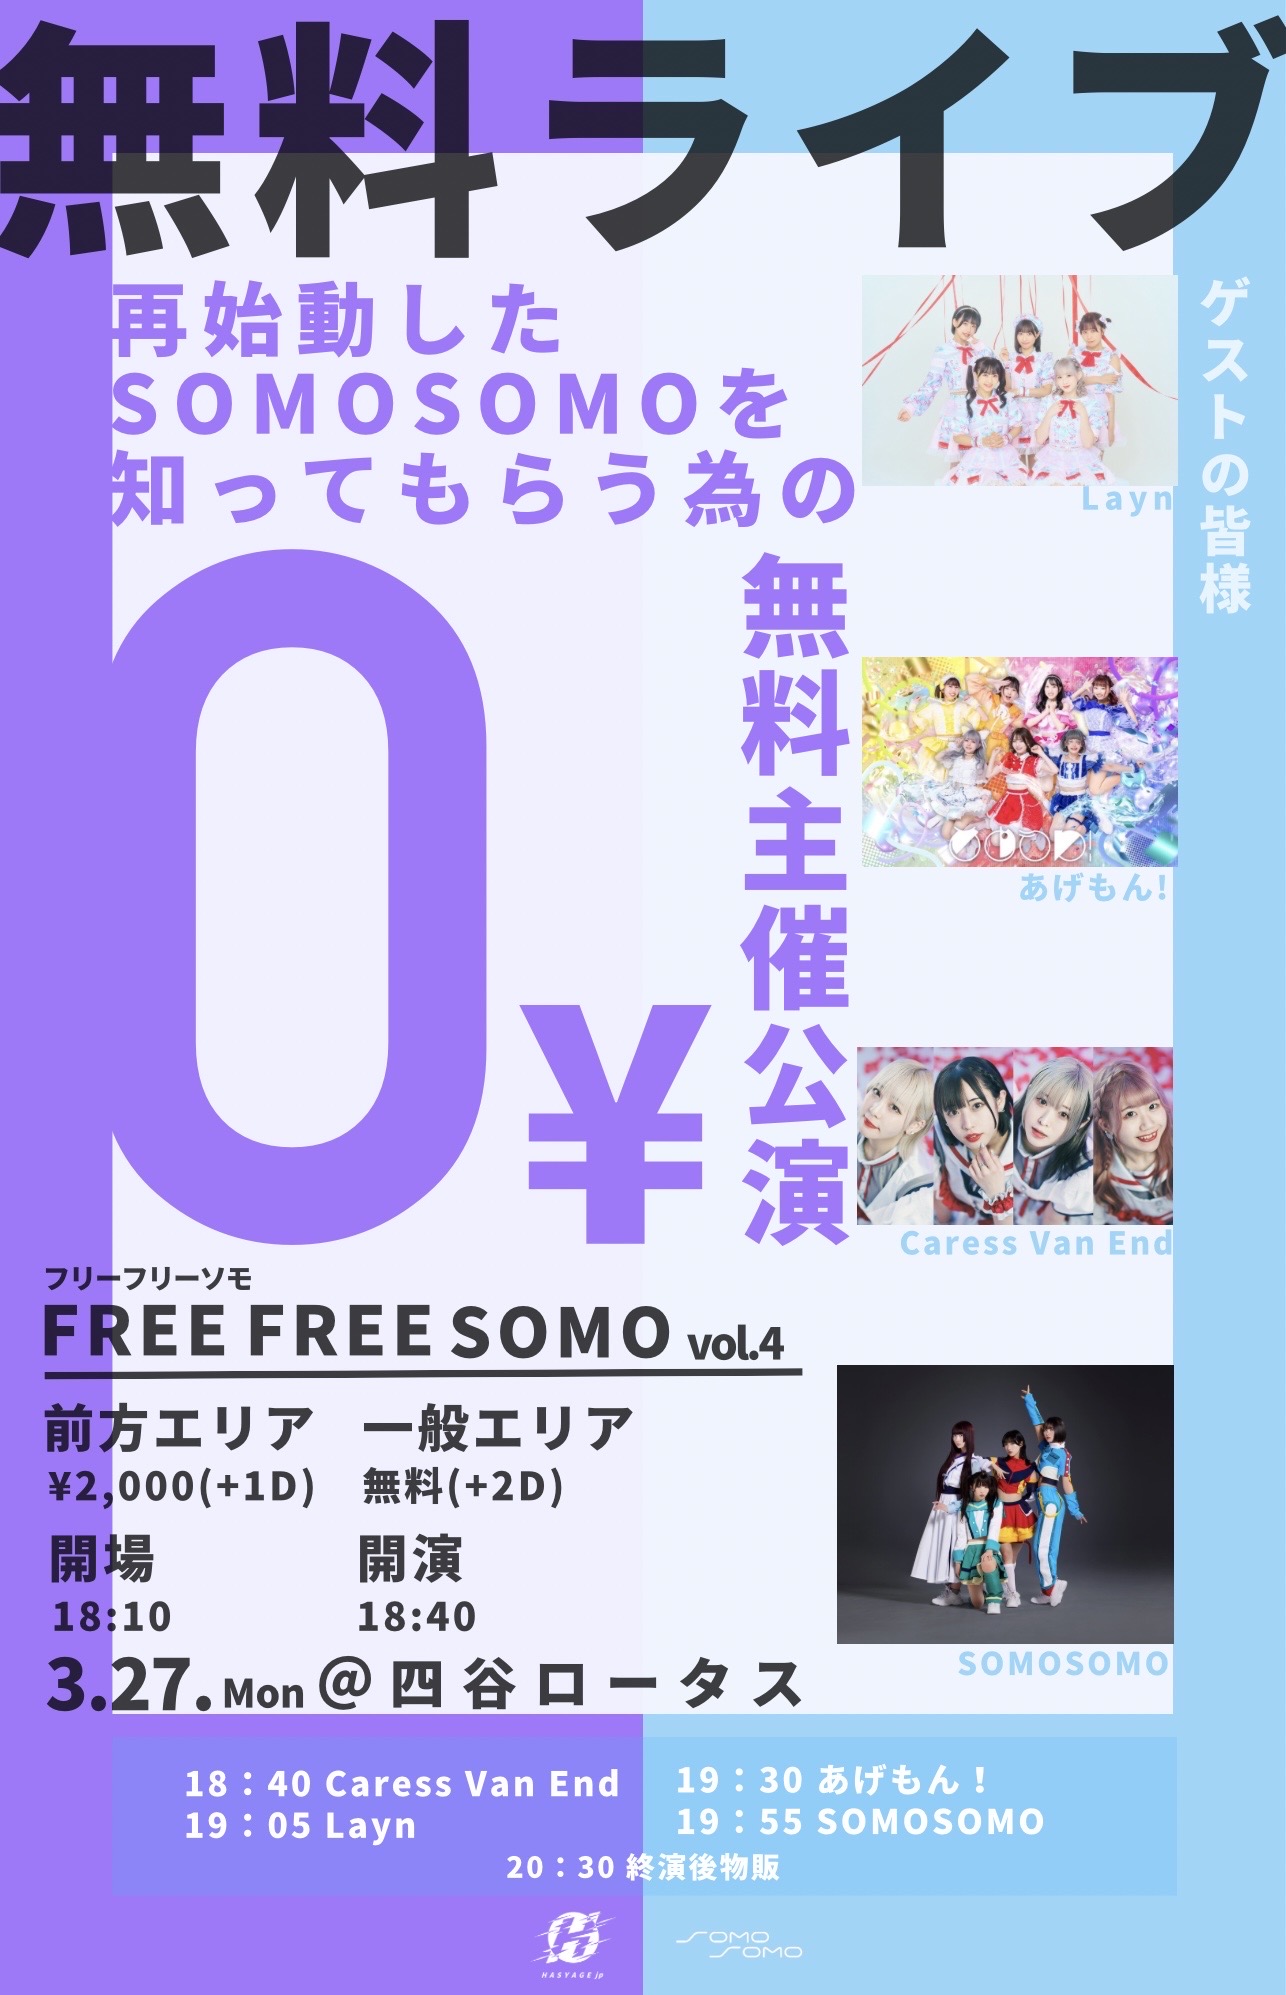 FREE FREE SOMO vol.4